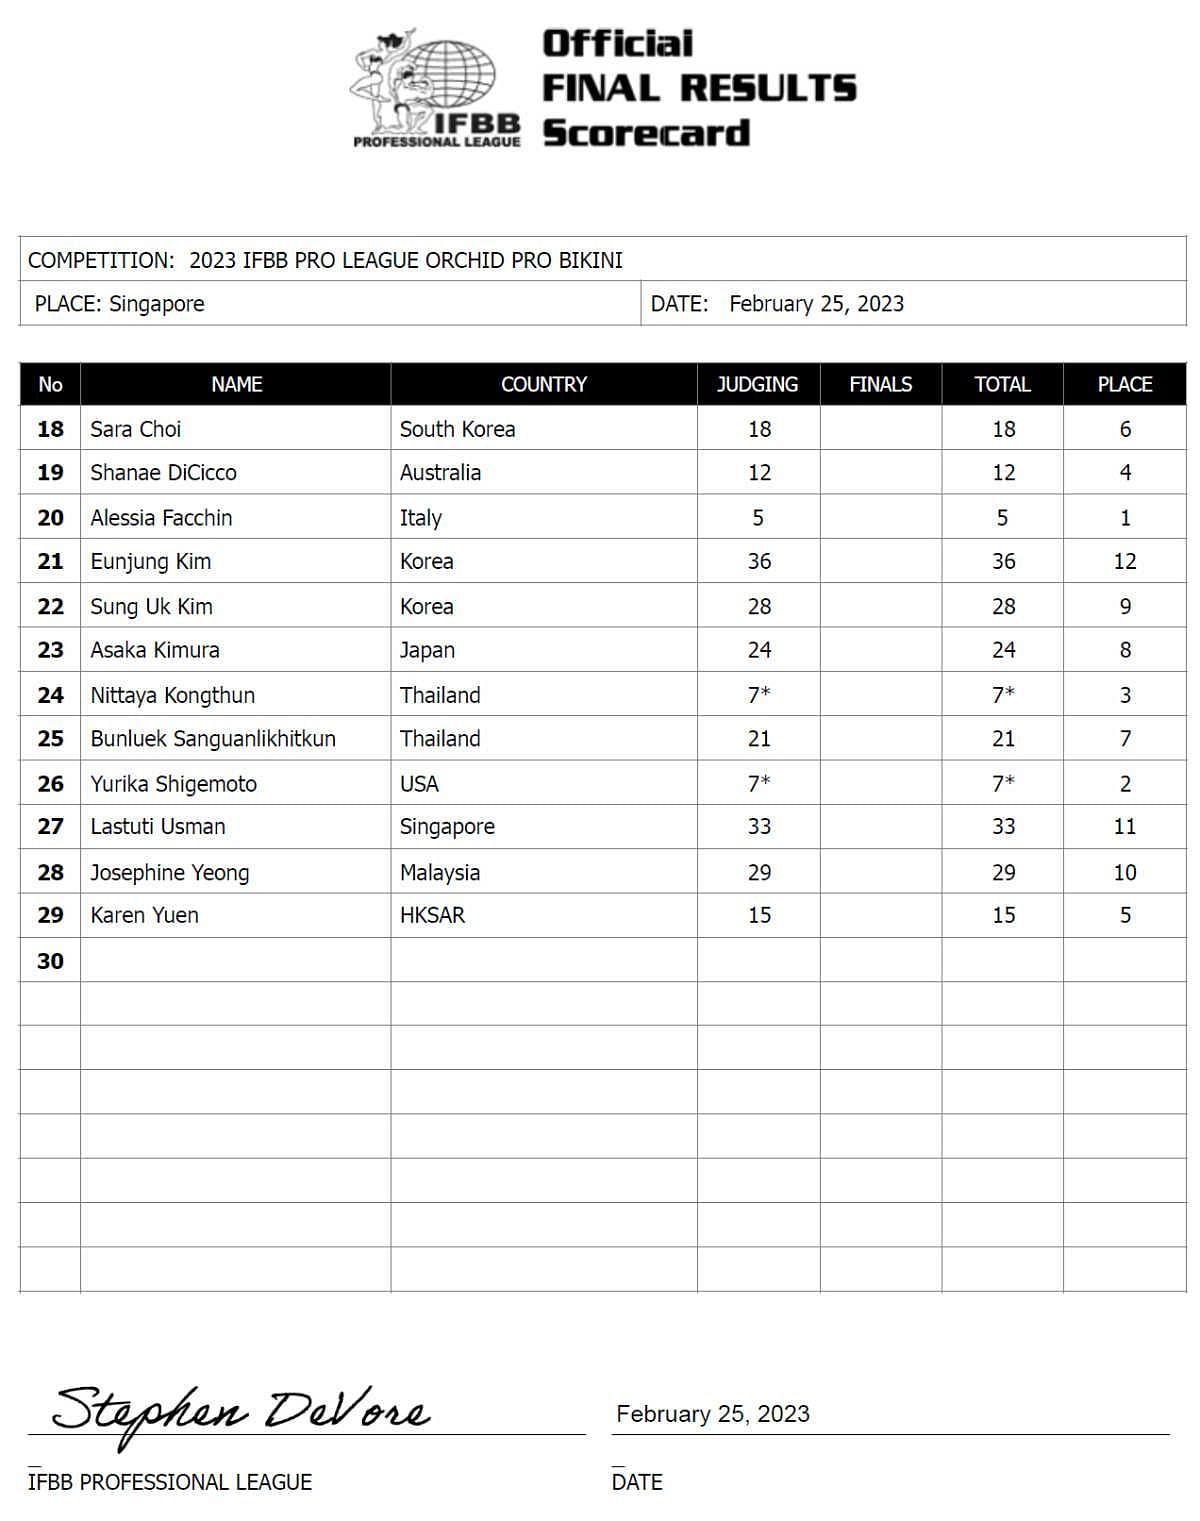 2023 Orchid Pro Bikini Division Scorecard (Image via IFBBpro.com)